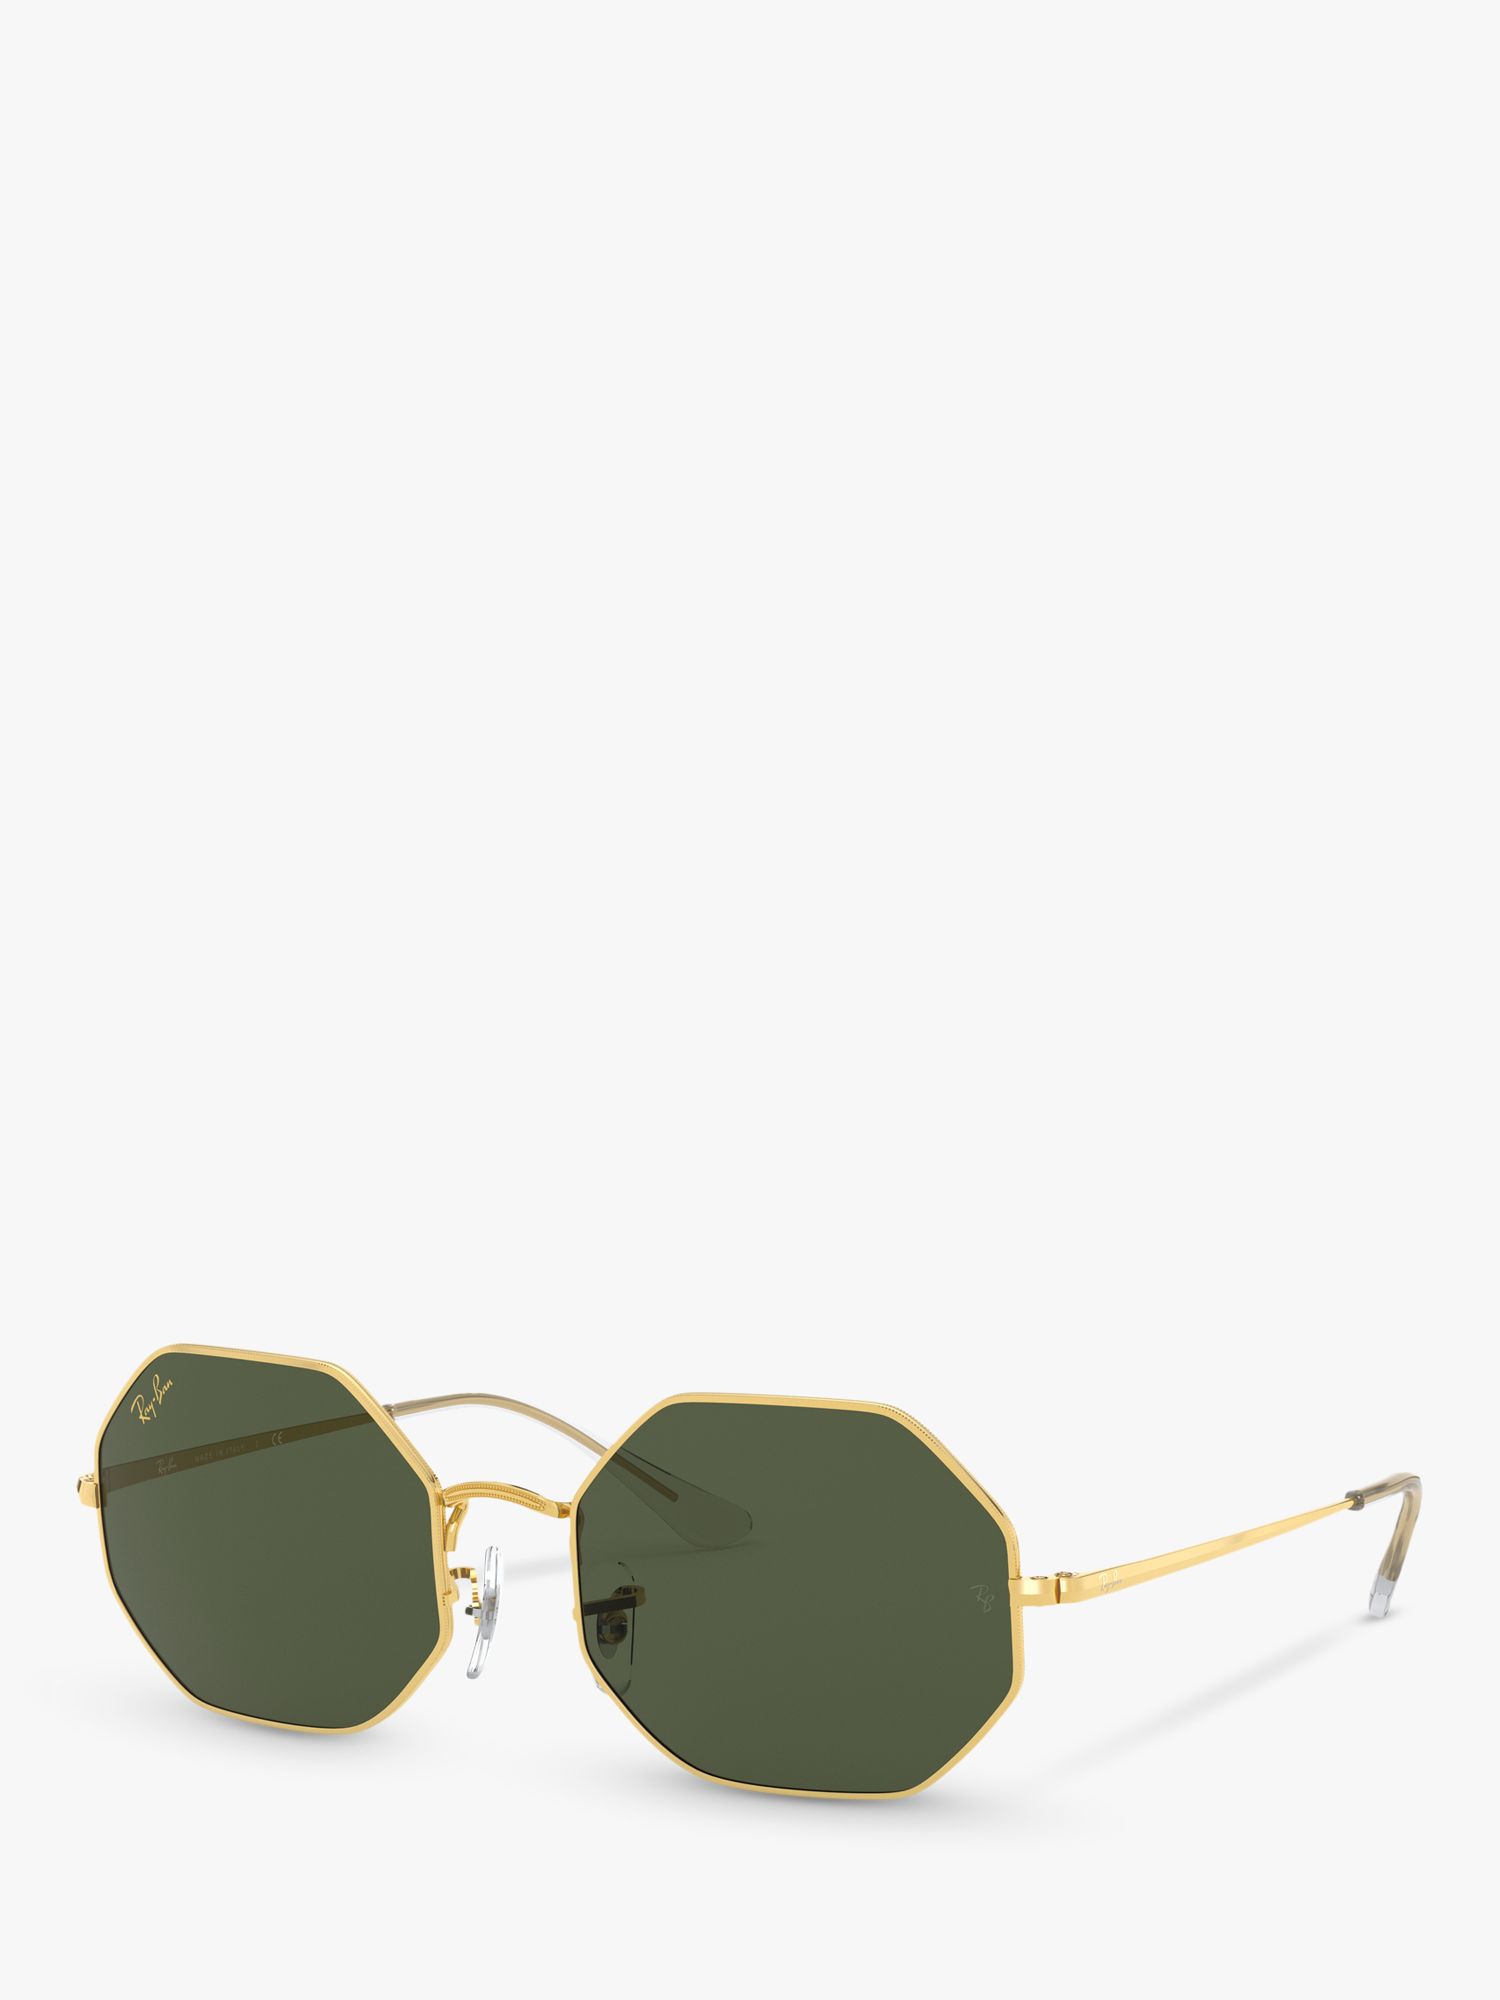 Солнцезащитные очки Ray-Ban RB1972 унисекс, восьмиугольные, золотистые/зеленые